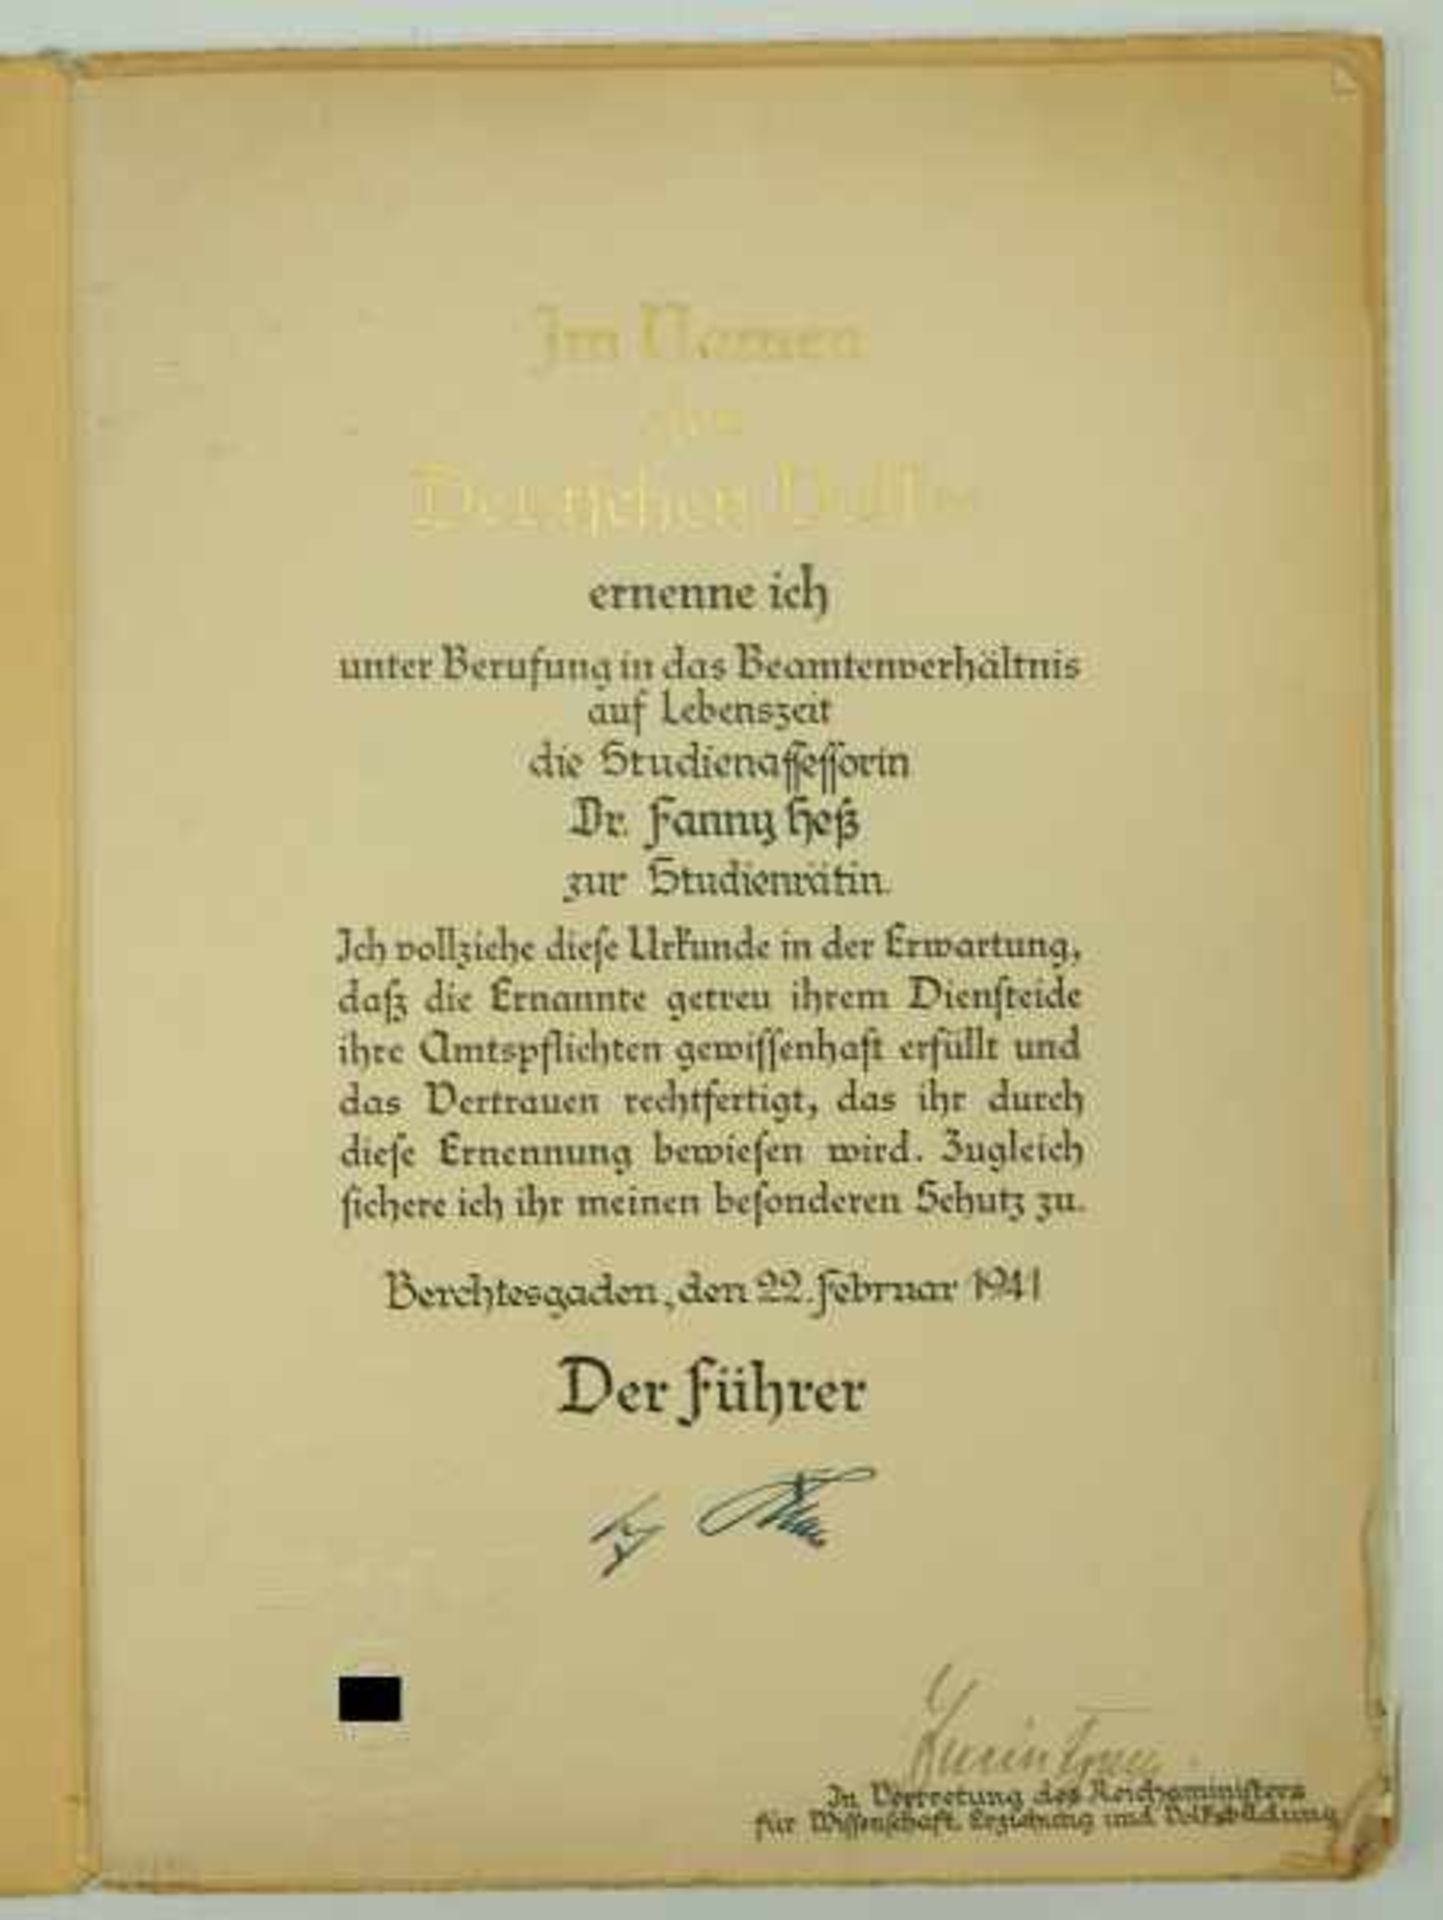 3.1.) Urkunden / DokumenteNachlass einer Frau Dr. Studienrätin.- Patent zur Studienrätin (